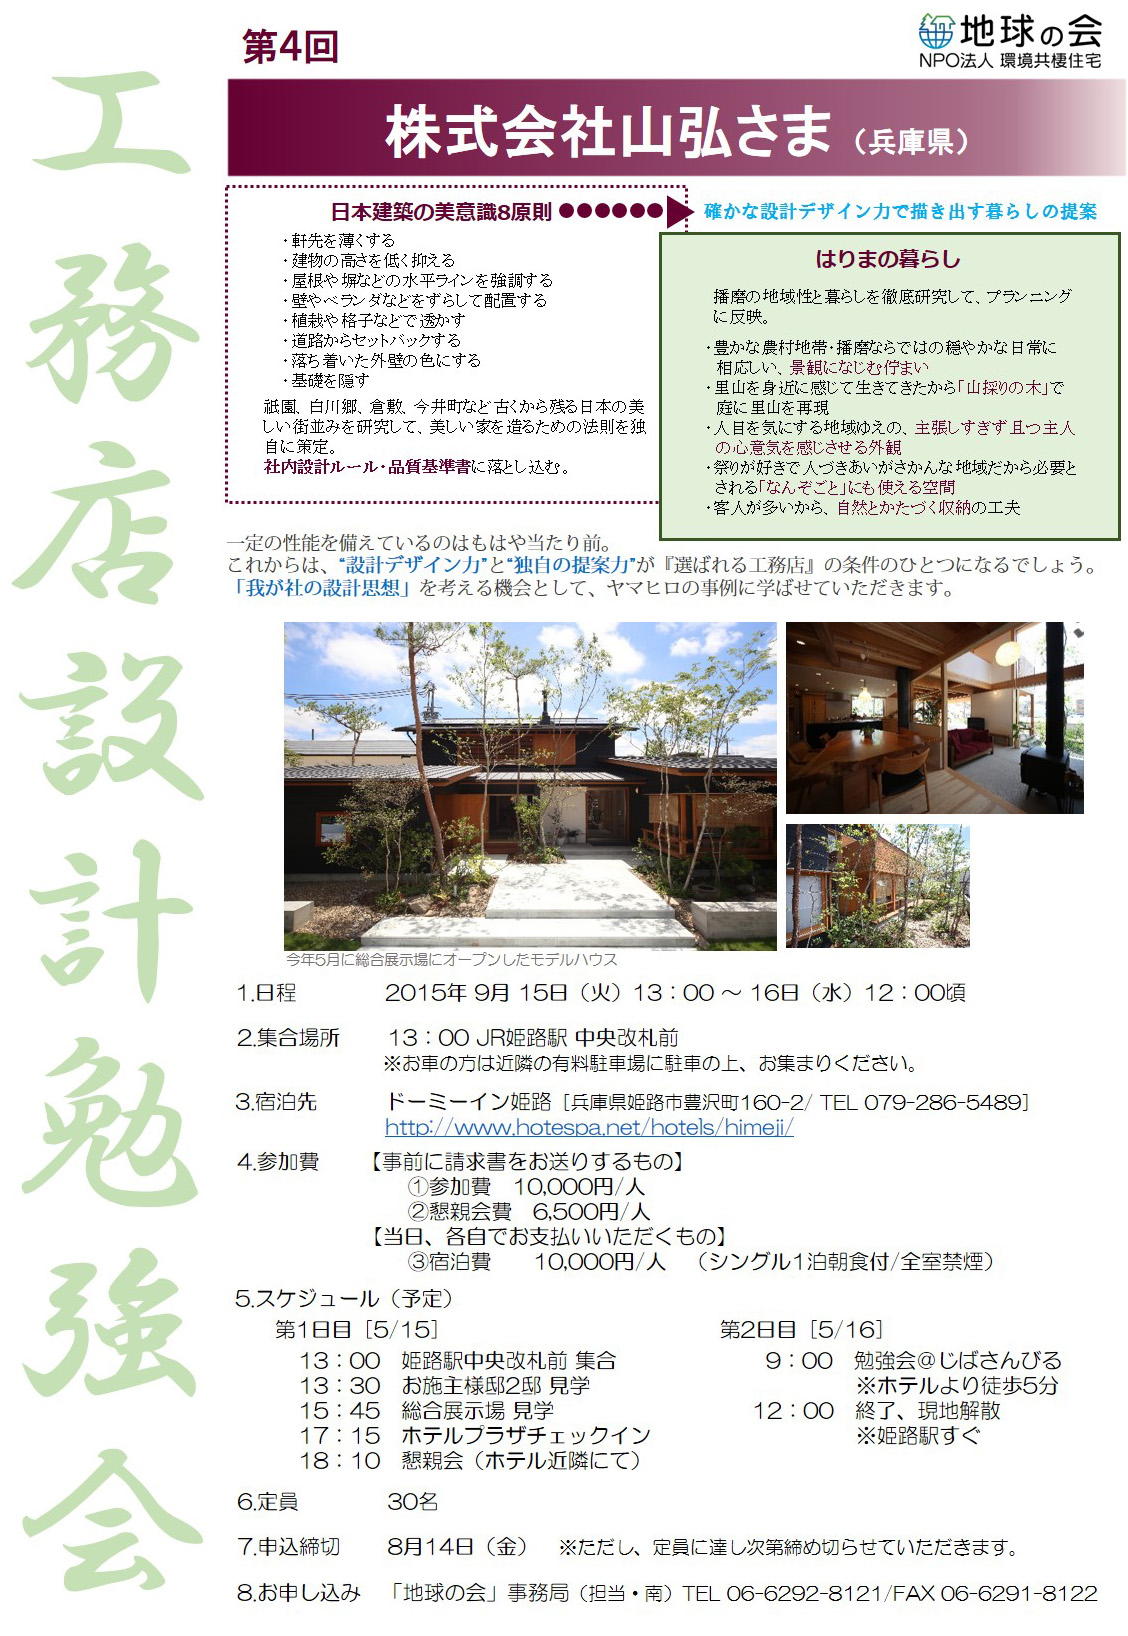 http://www.chikyunokai.com/topics/files/koumutensekkei_yamahiro.jpg